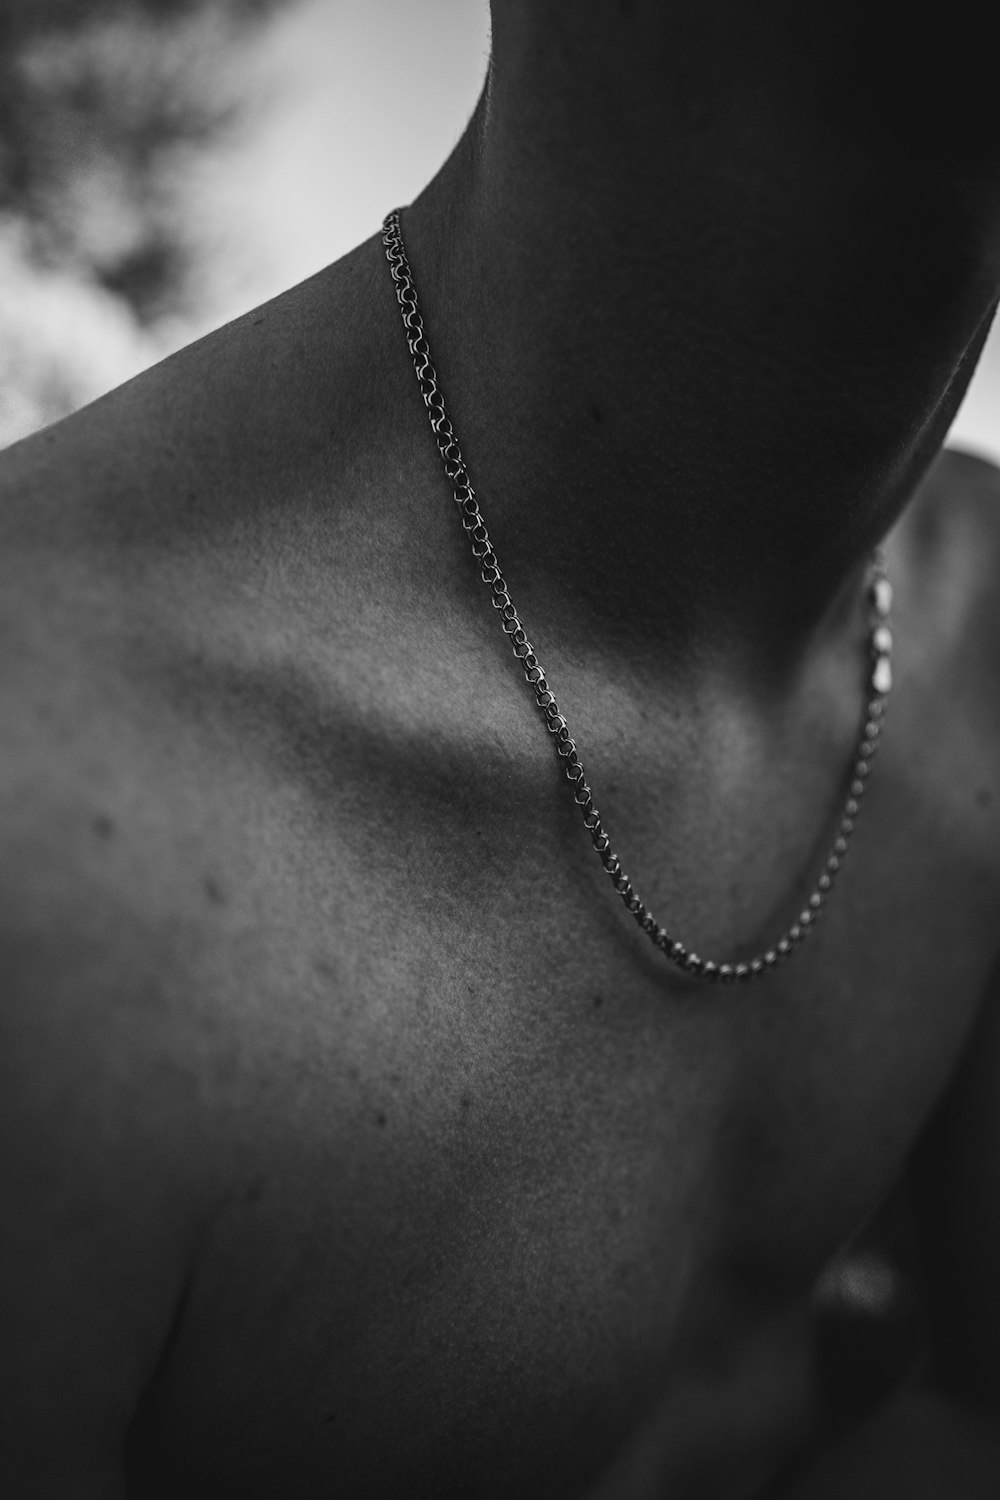 fotografia in bianco e nero di un uomo che indossa una collana a catena